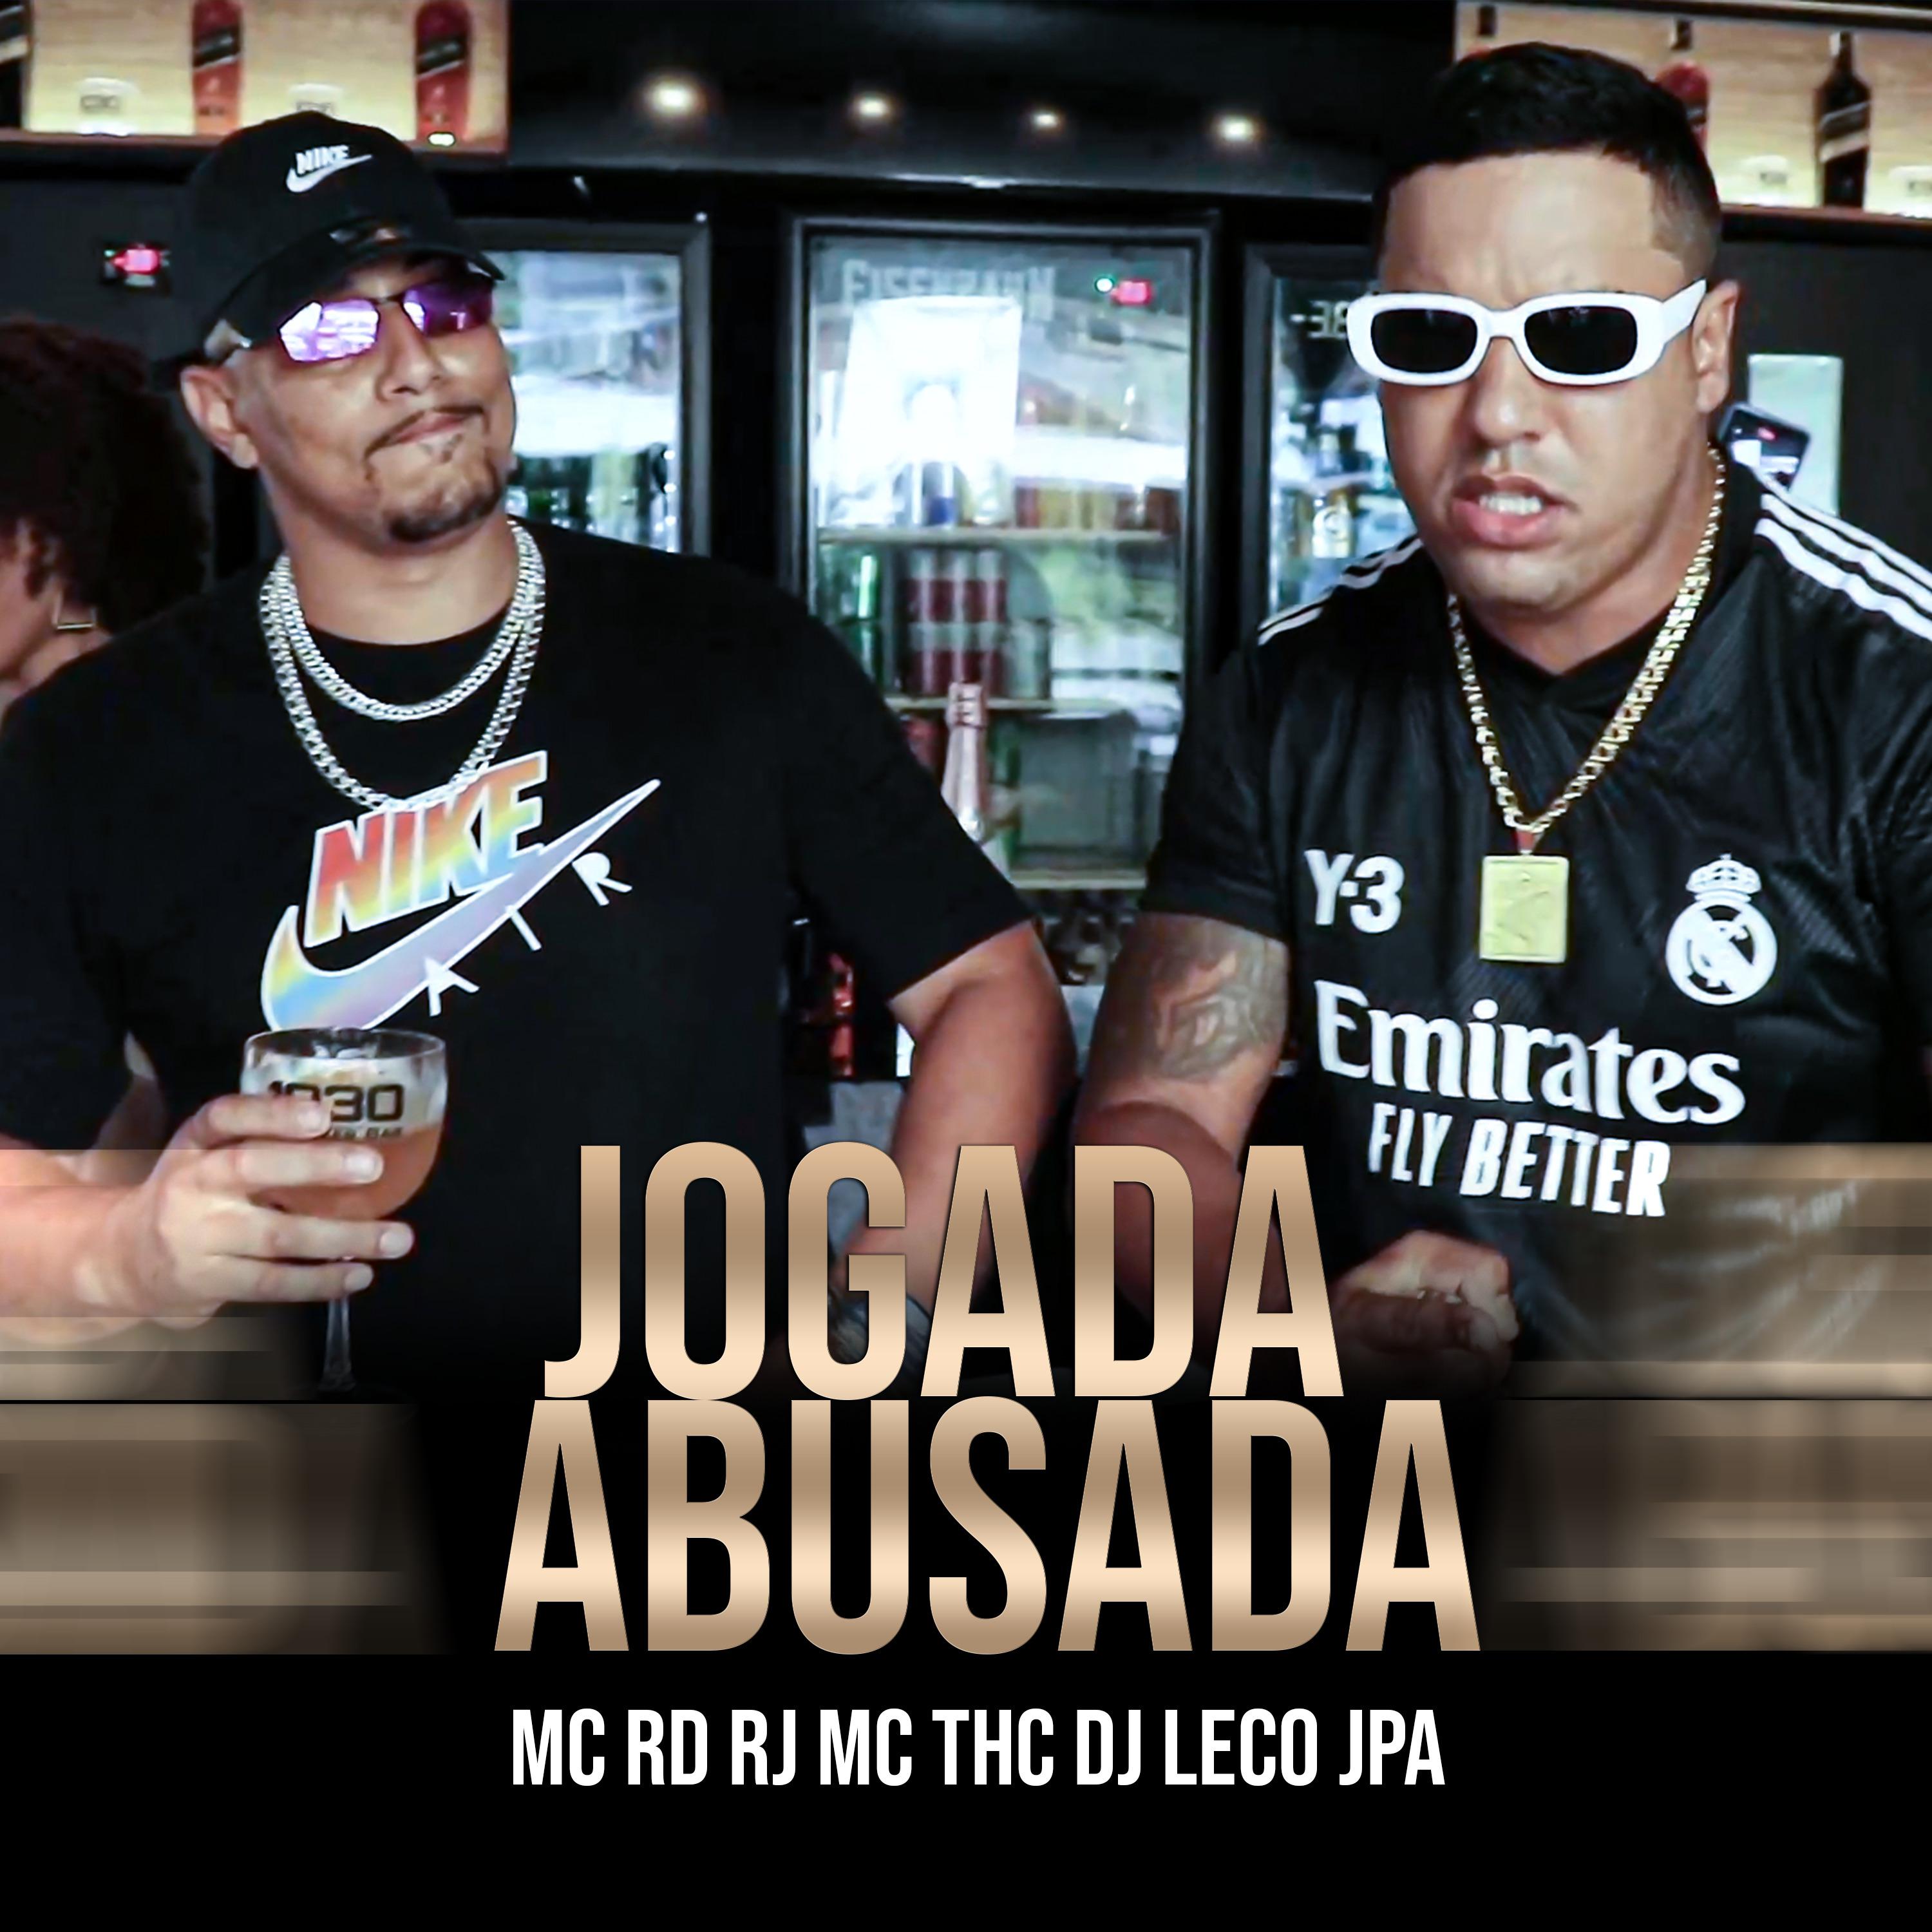 DJ Leco JPA - Jogada Abusada